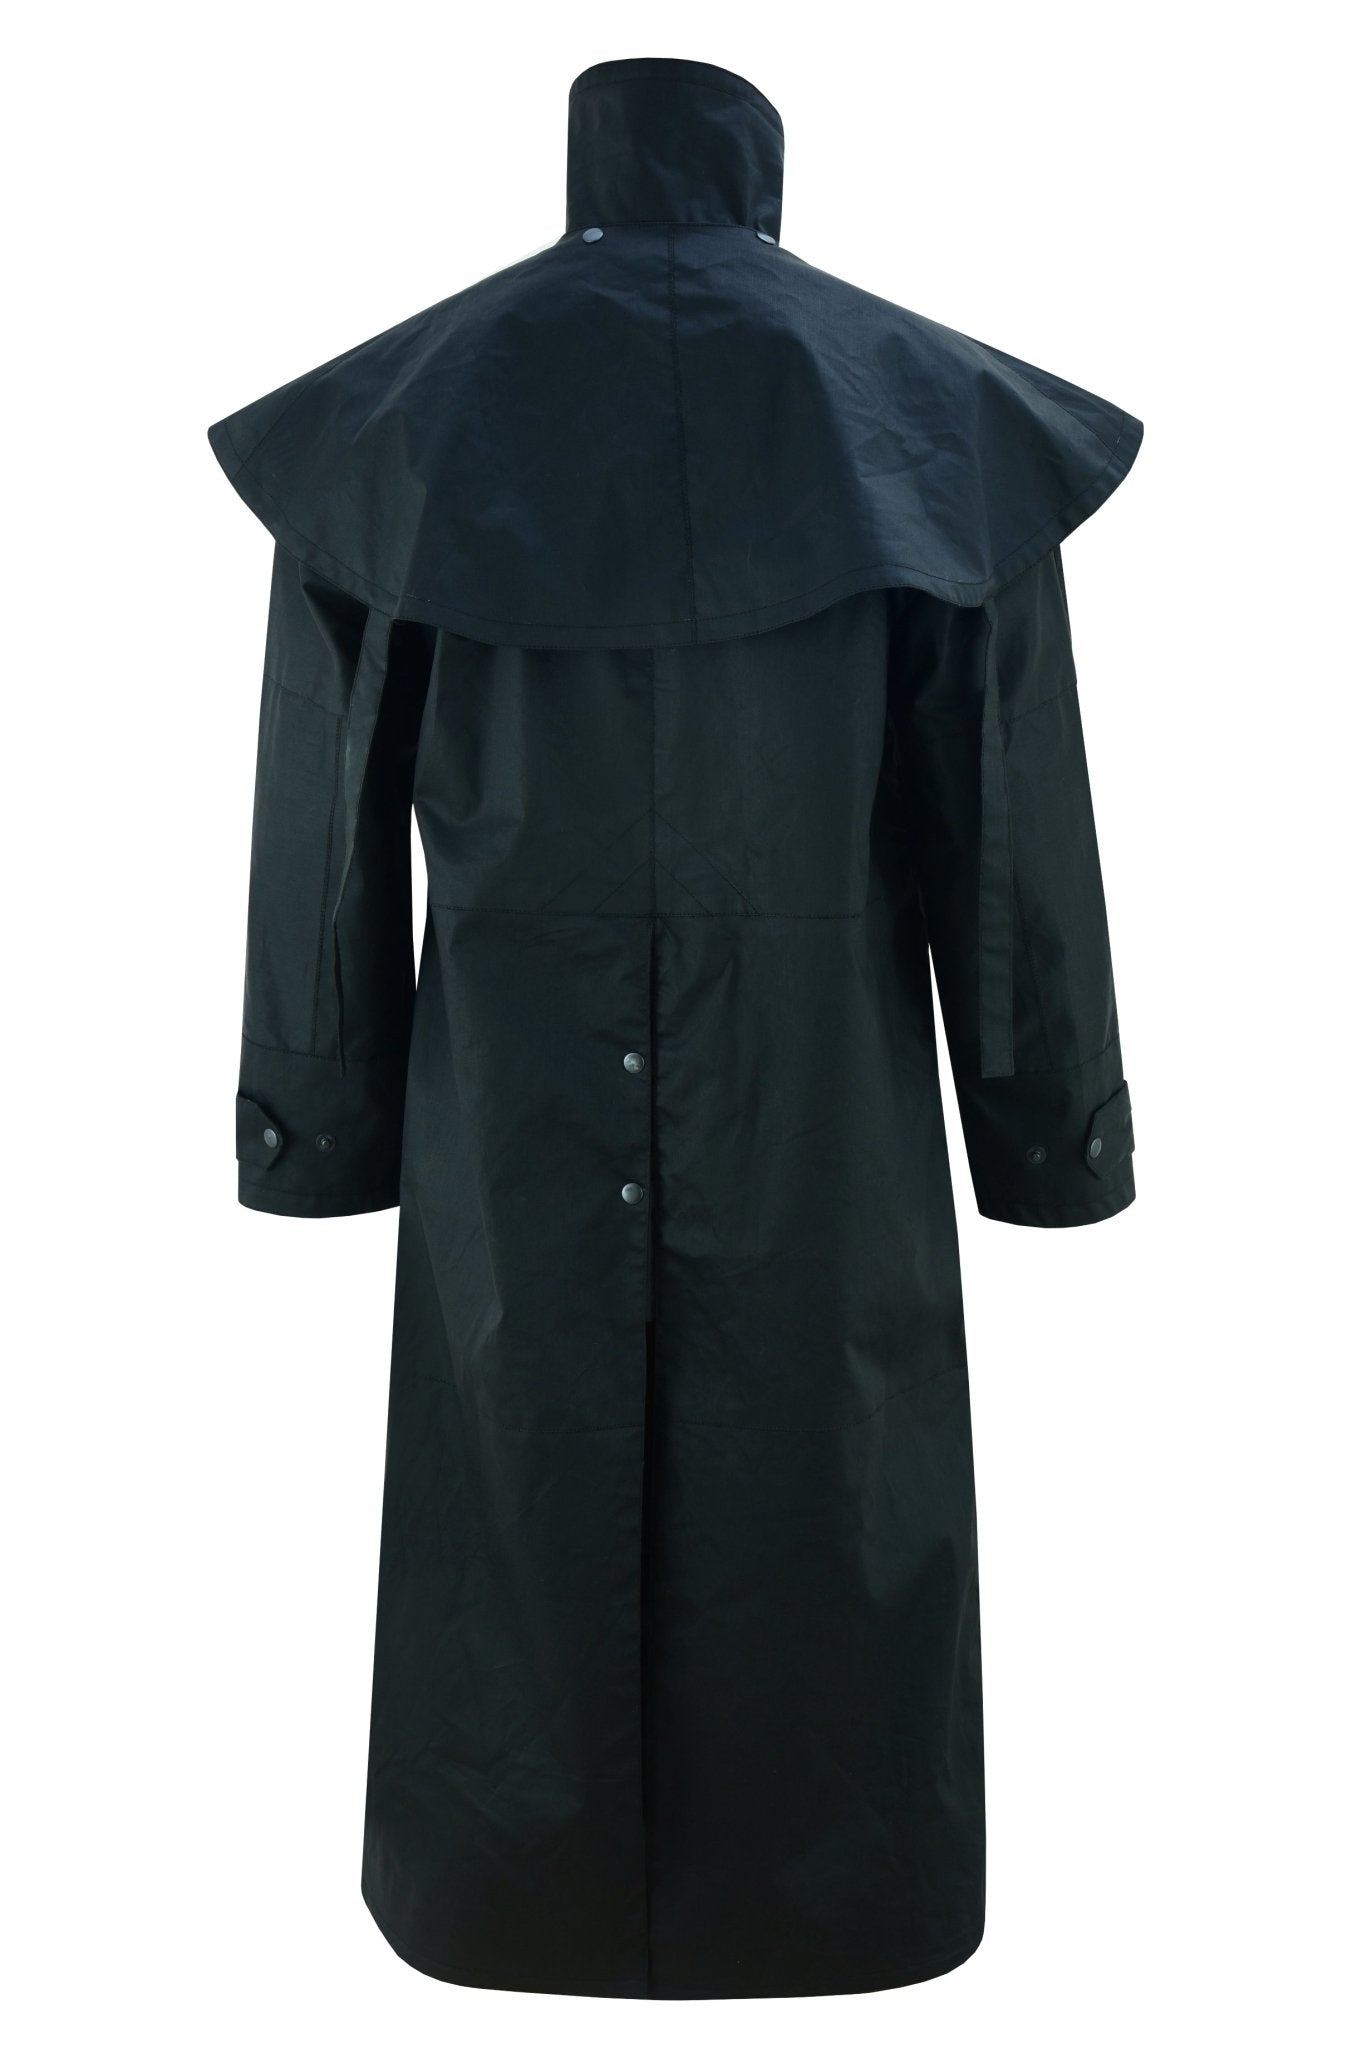 Black Unisex Duster Waterproof Long Coat Countrywear – Vintage Leather